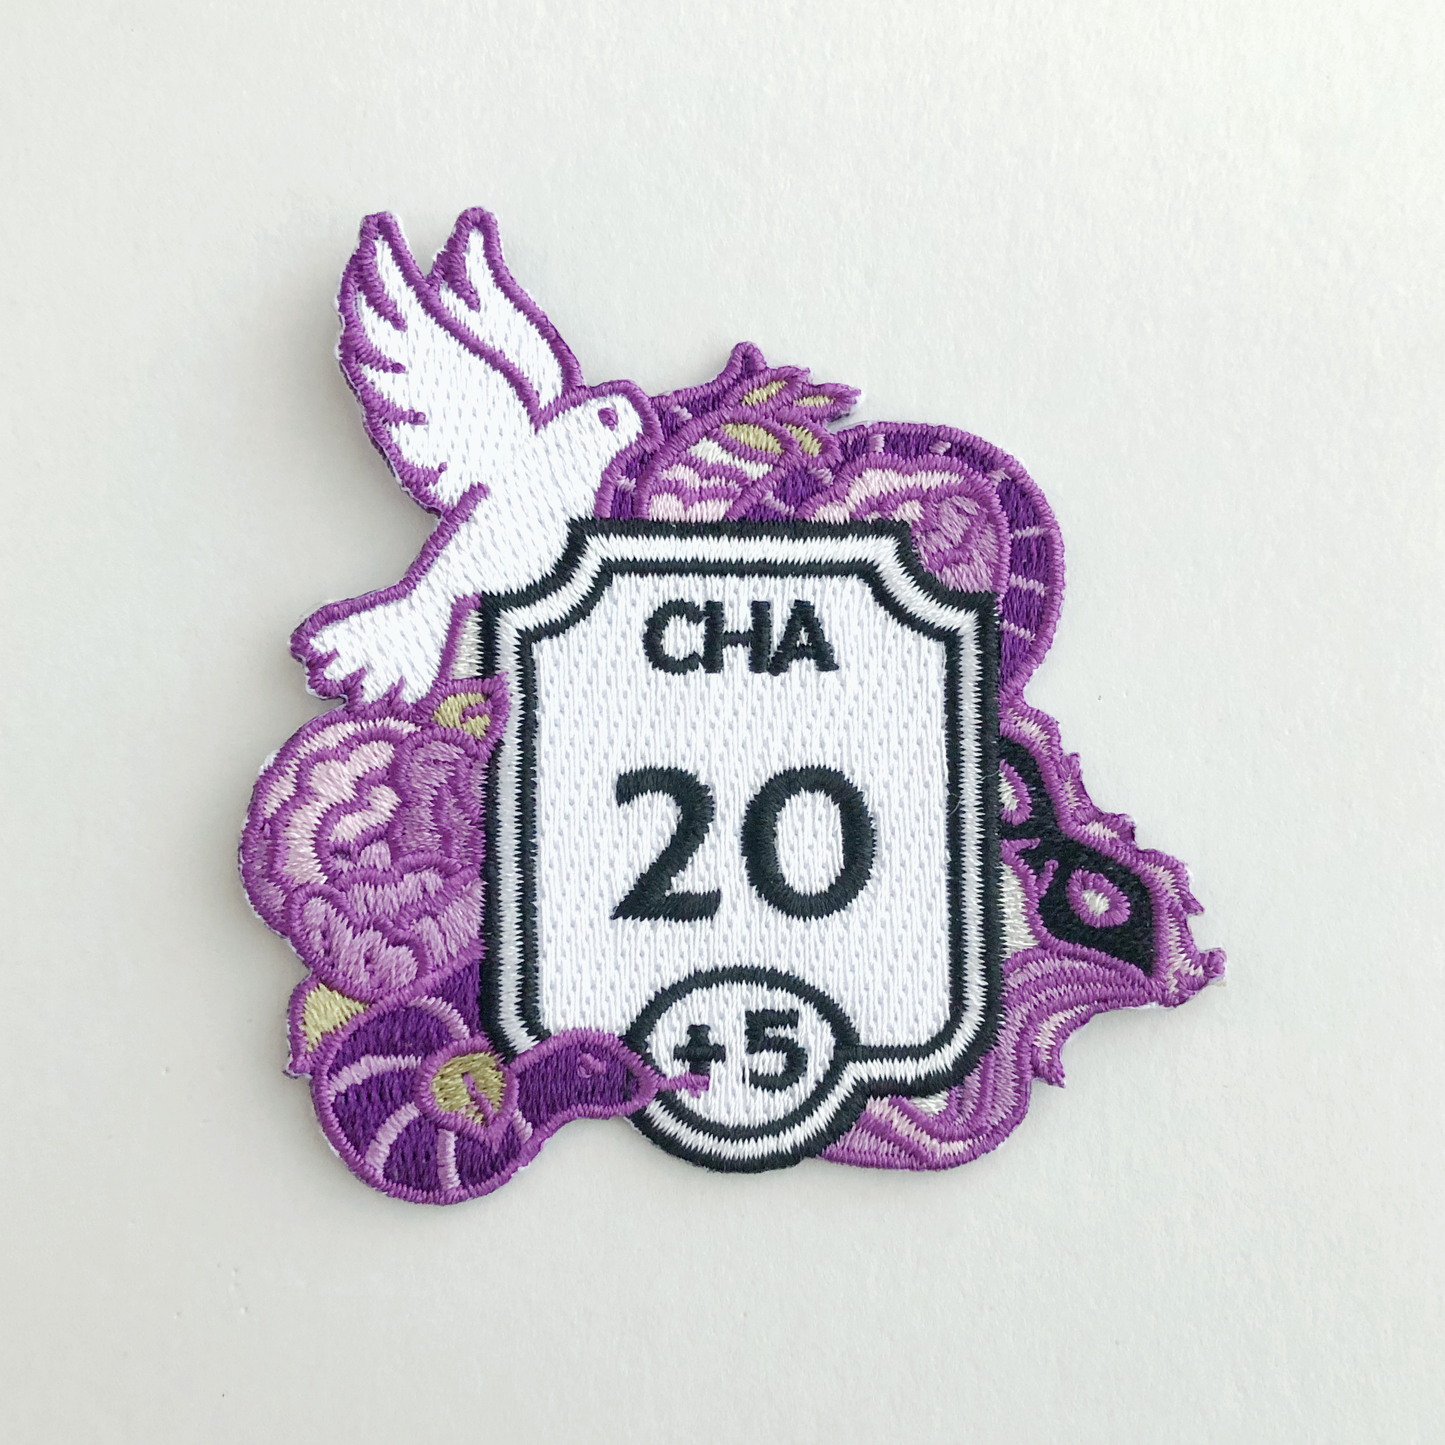 SECONDS Ability Score Patch: Charisma (Purple)